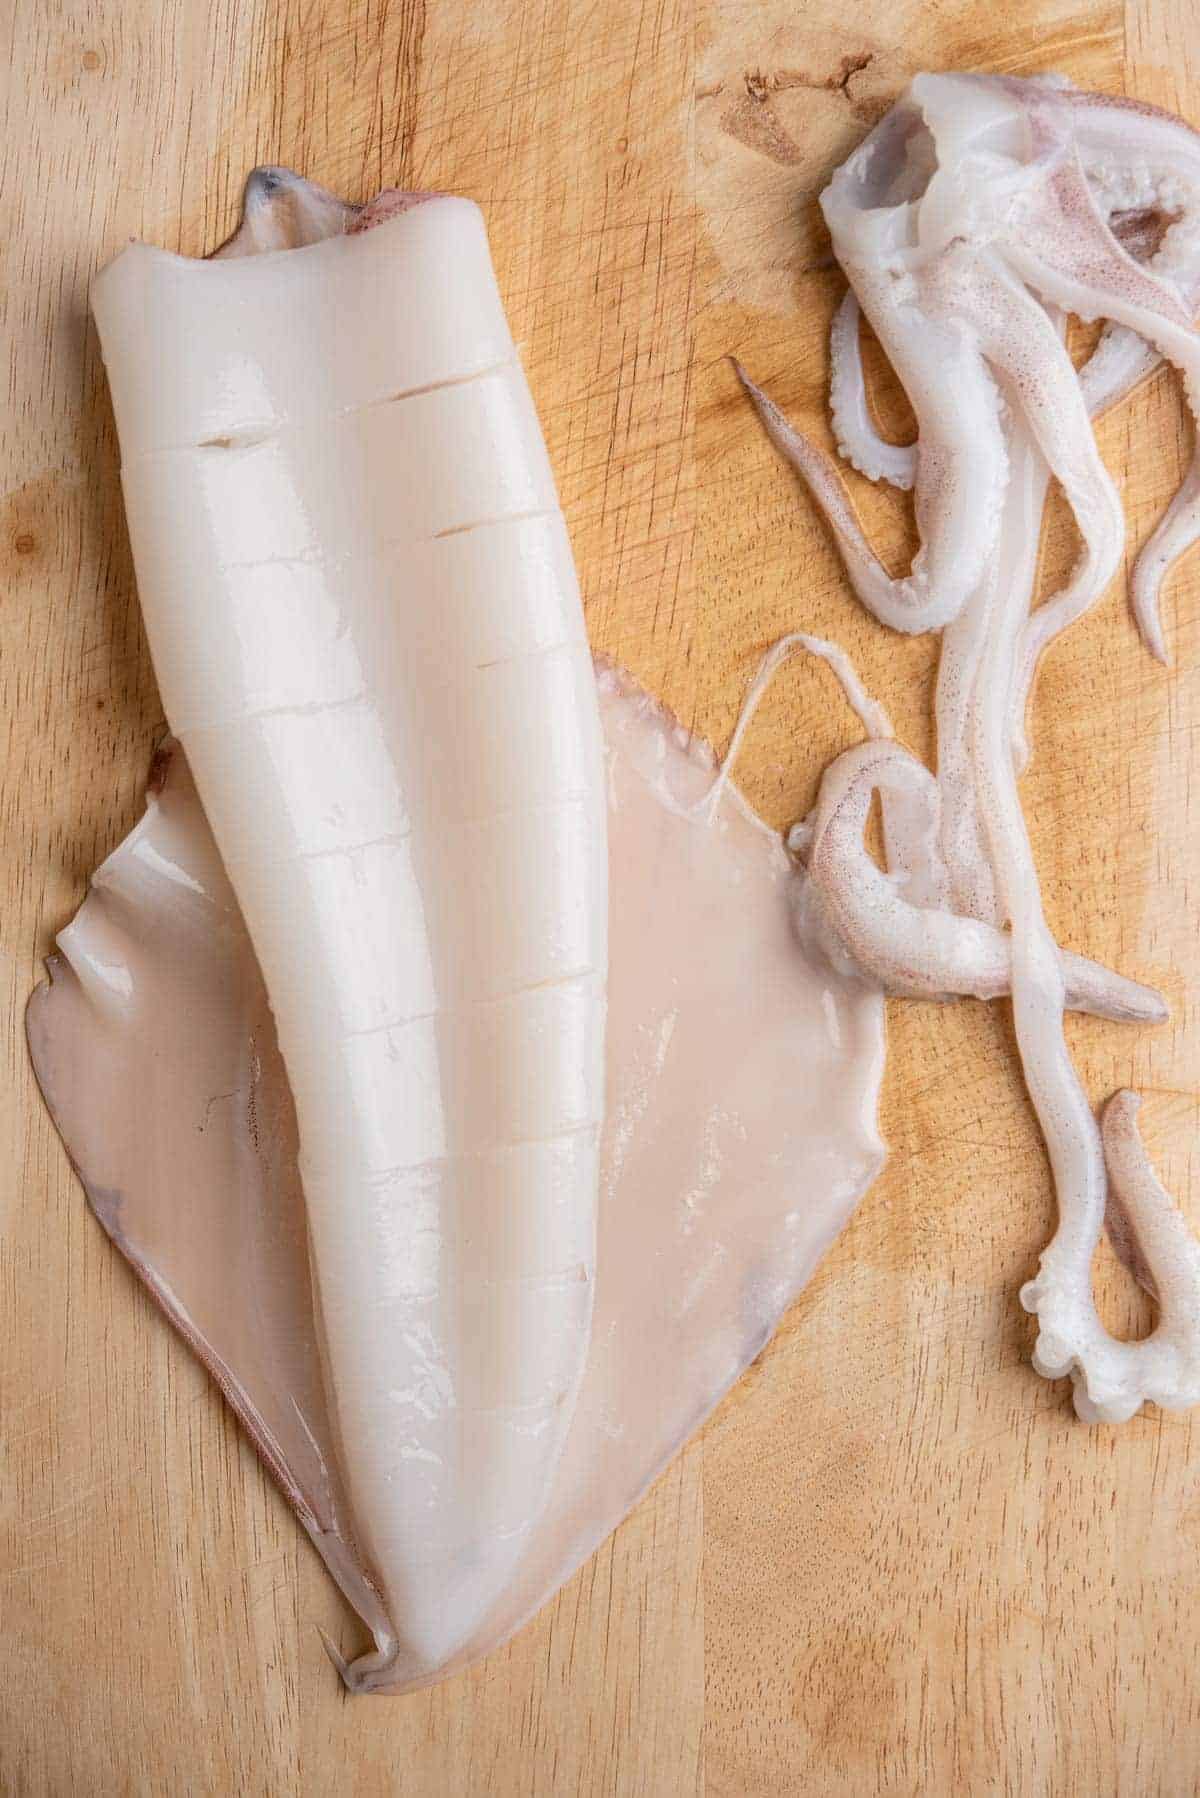 Preparing Whole Squid